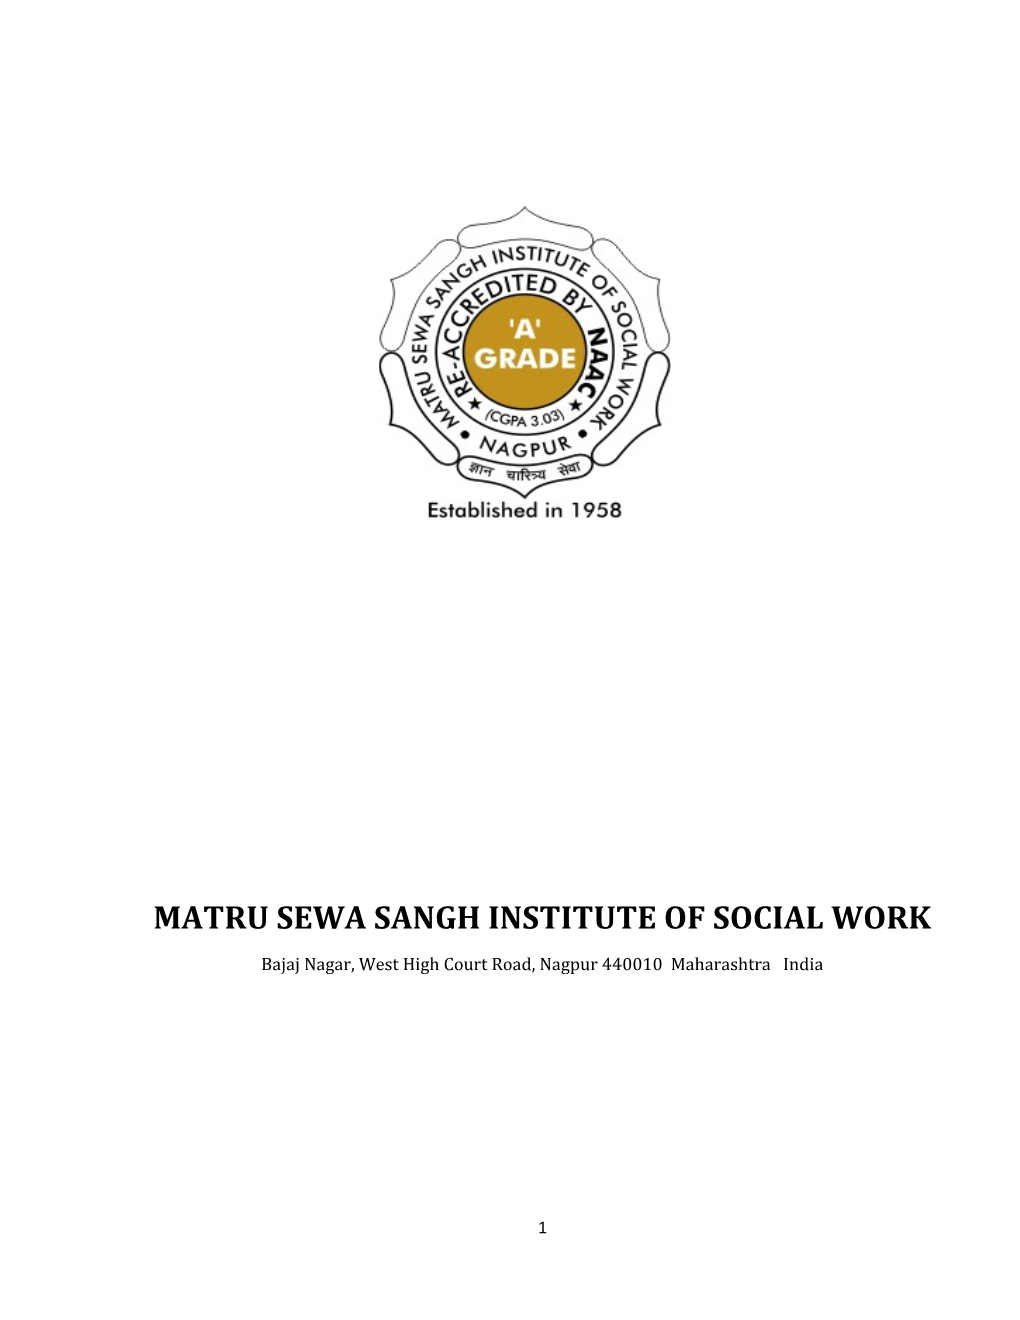 Matru Sewa Sangh Institute of Social Work